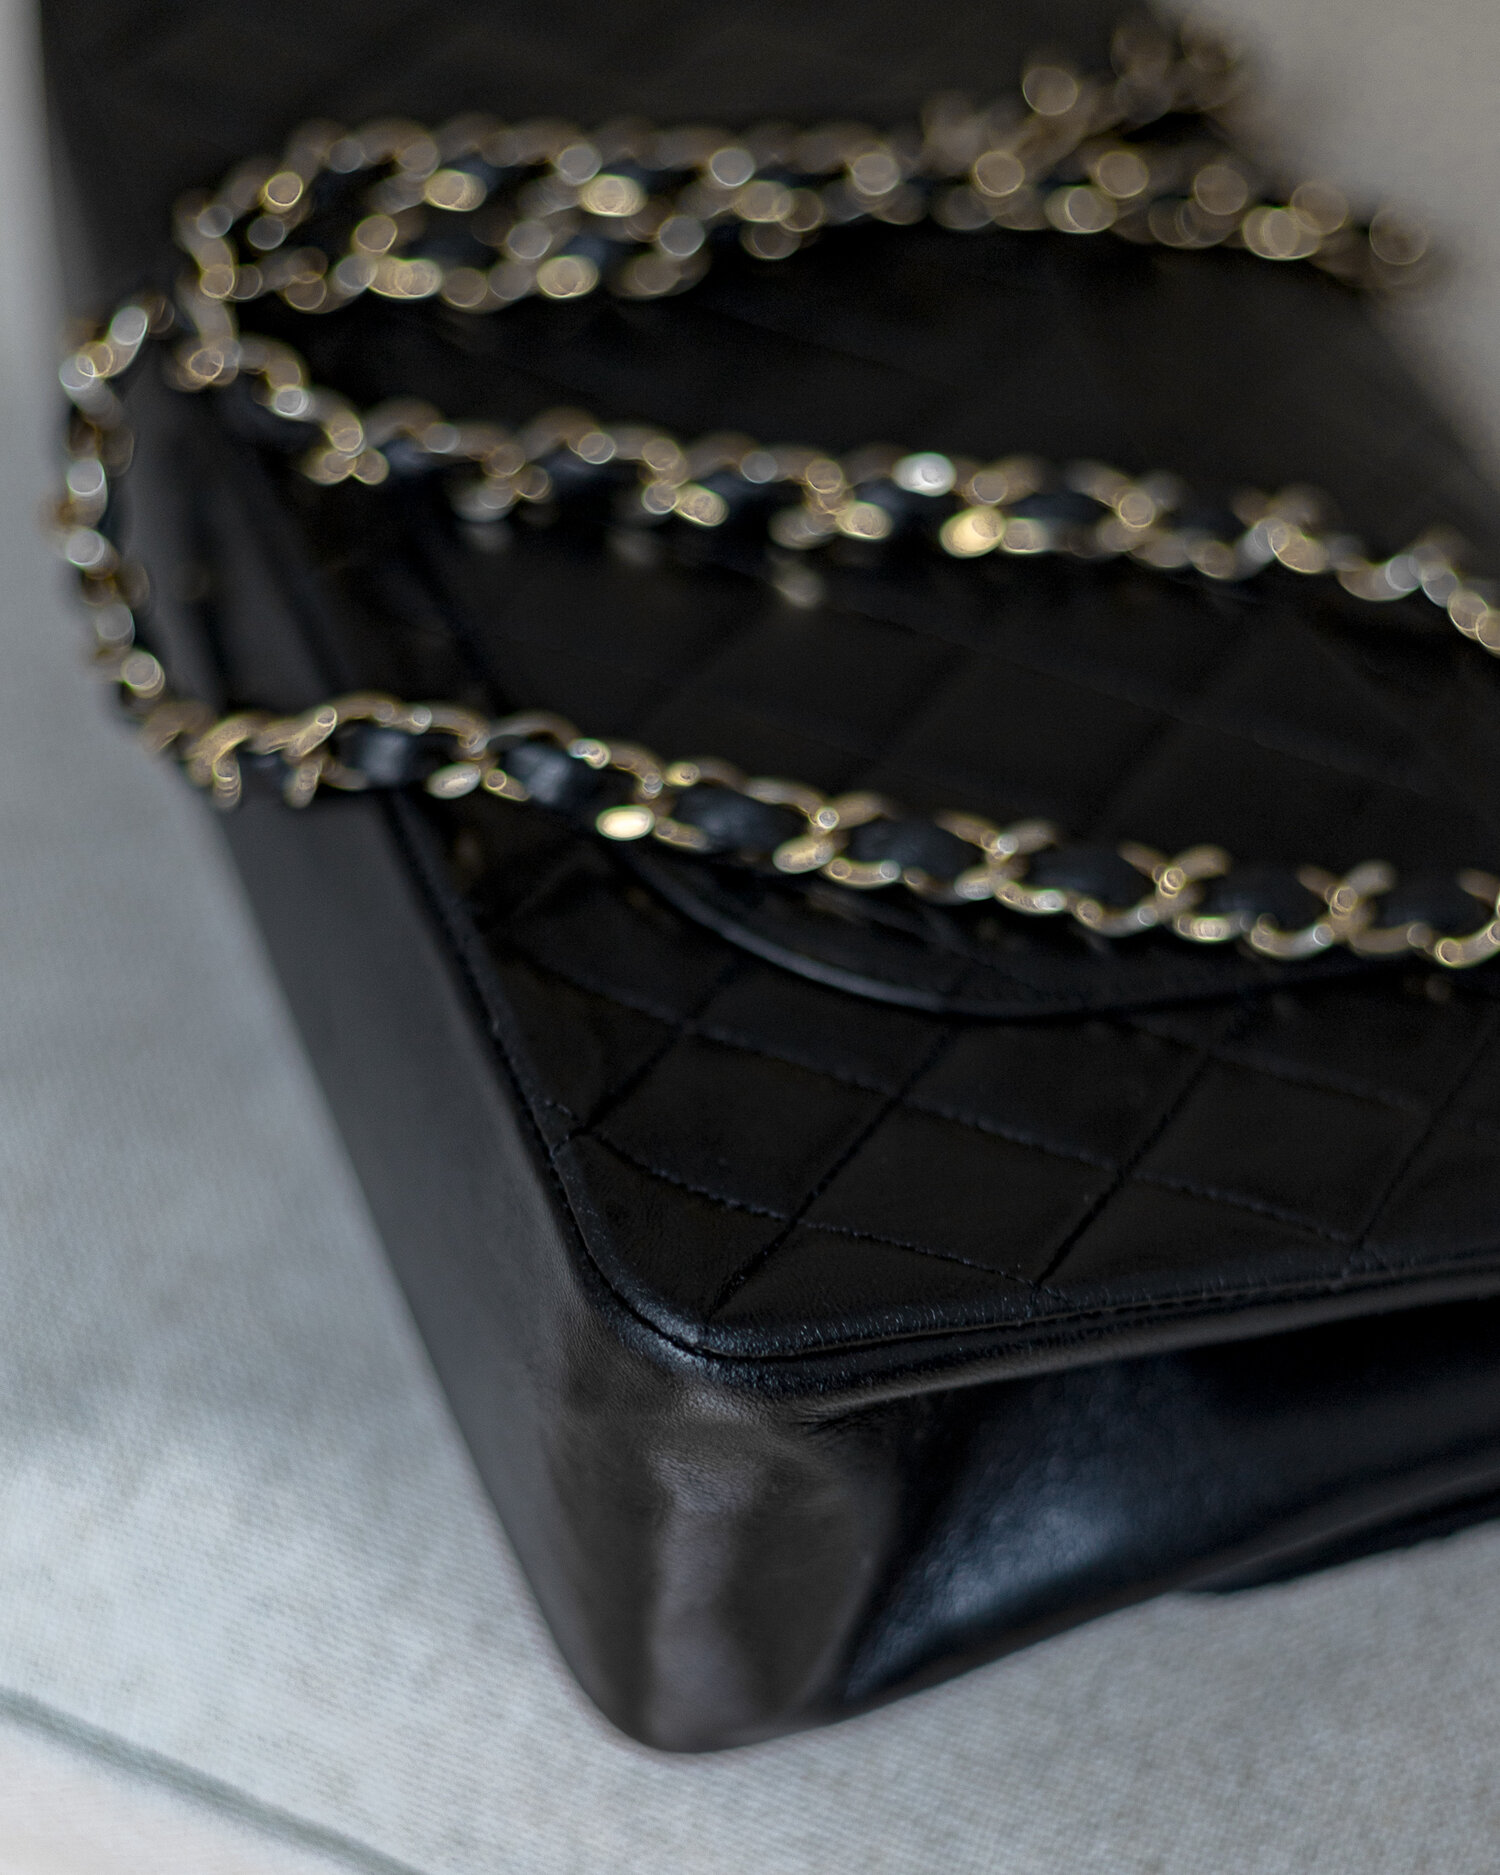 Vintage Chanel Classic Double Flap Bag in Black (1986/1988) — singulié